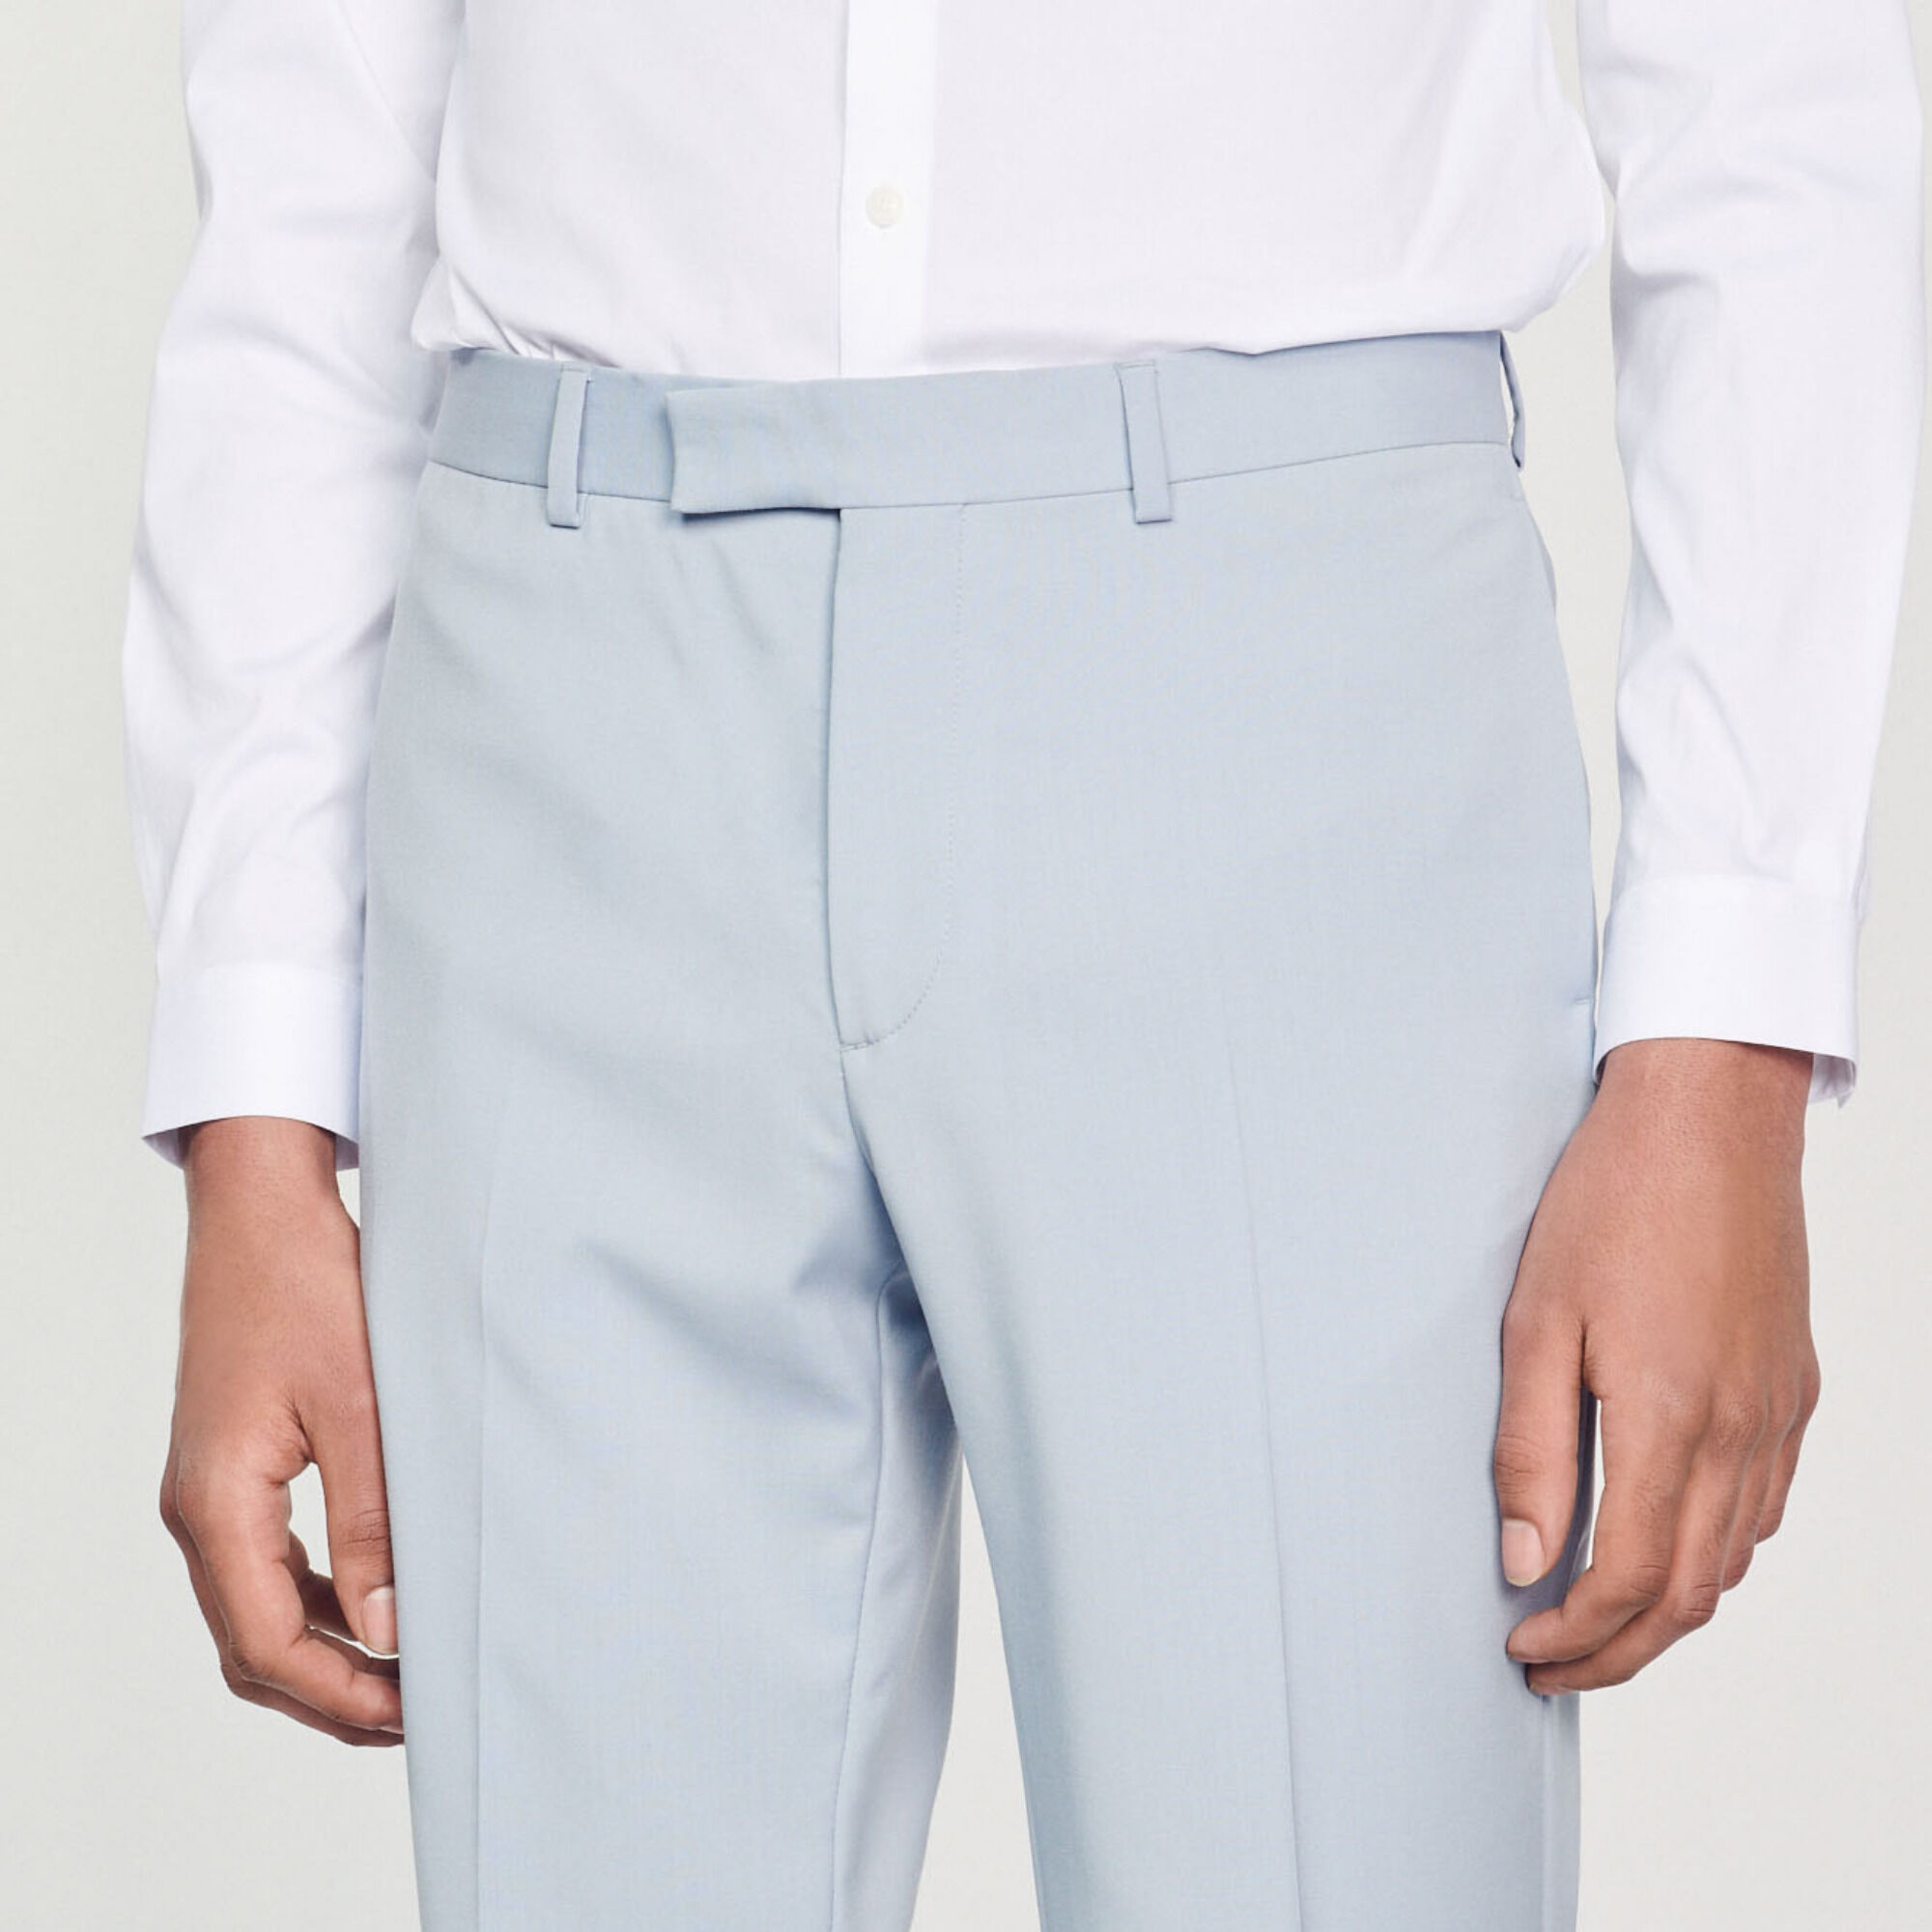 Jack  Jones Premium slim fit suit trouser in light blue  ASOS